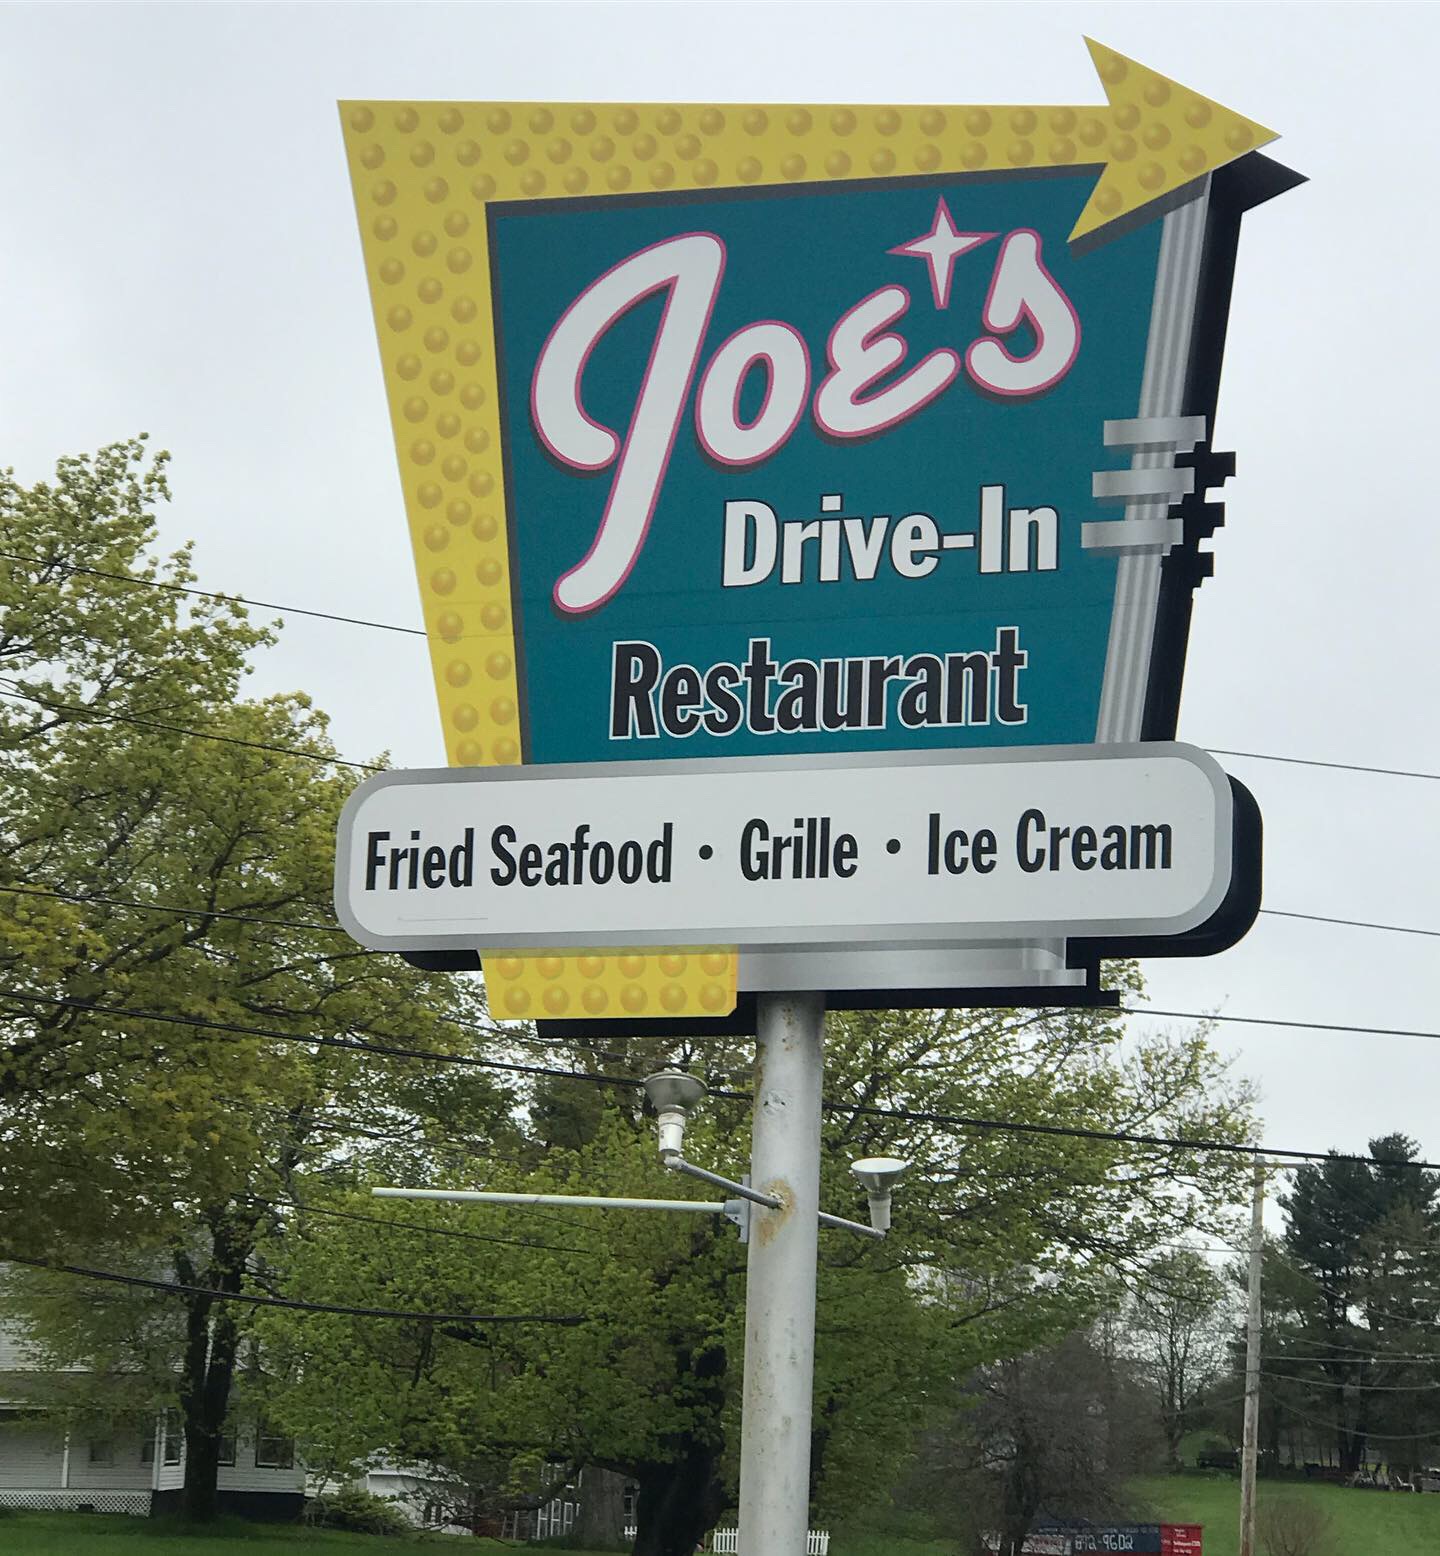 Joe's Drive-In